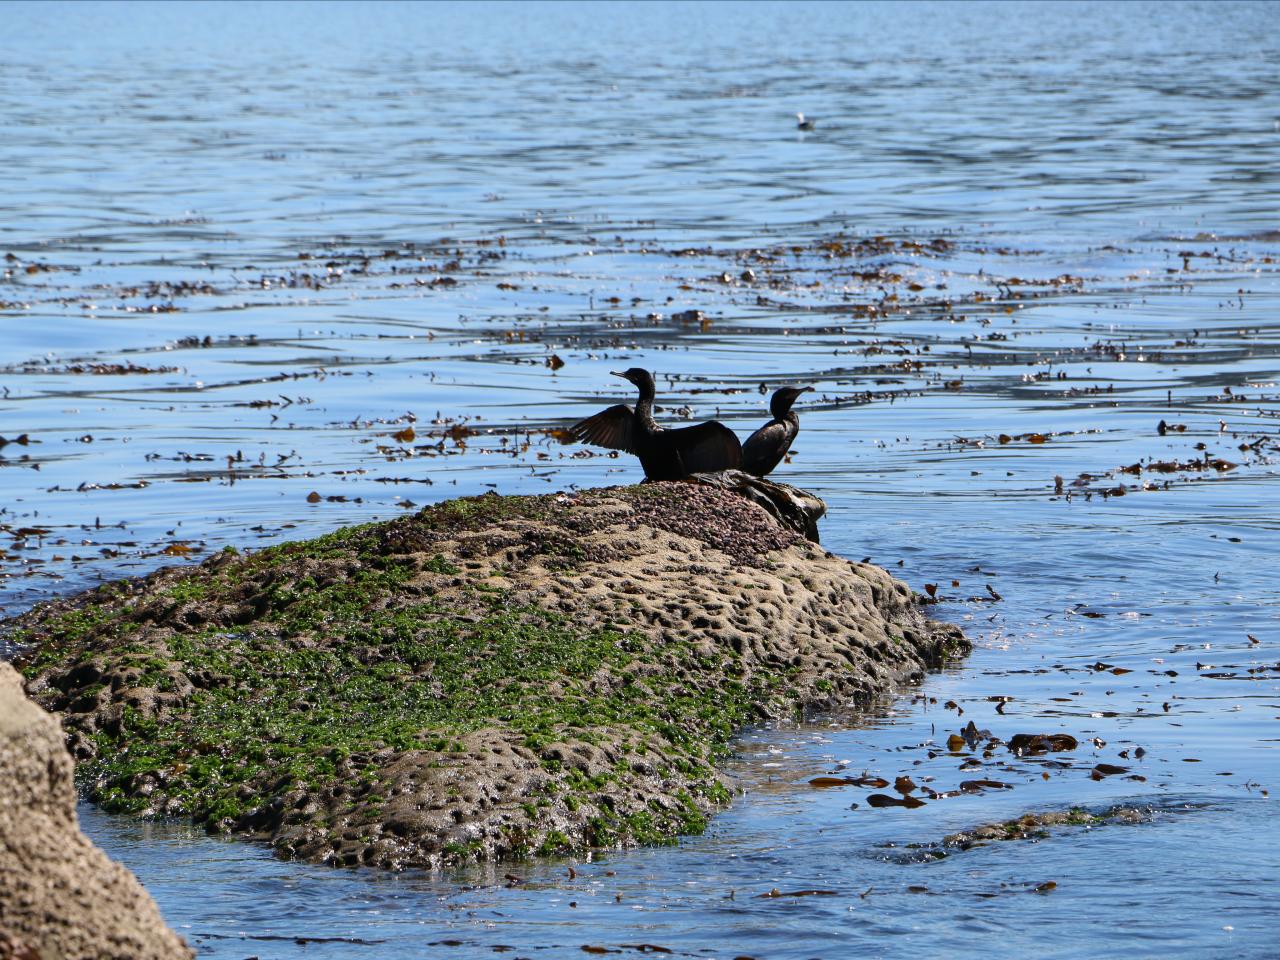 Taller "Cuando baja la marea" - cormoranes